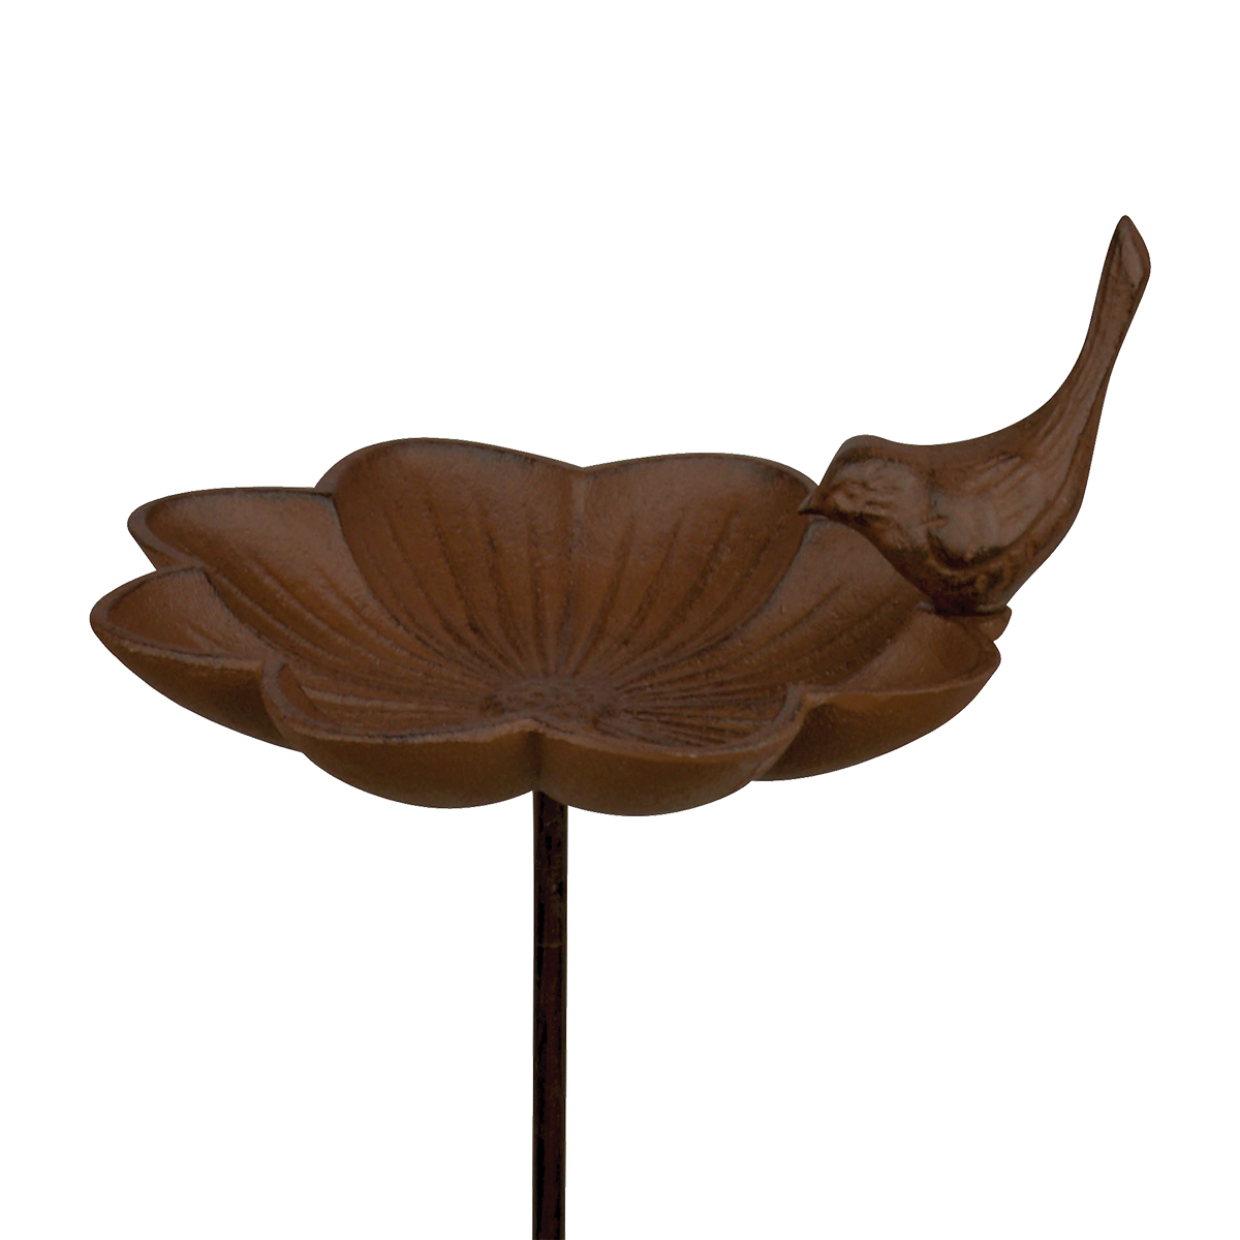 Voederschaal - Vogelvoederhuisje - Bruin - 18 cm x 18 cm x 84 cm